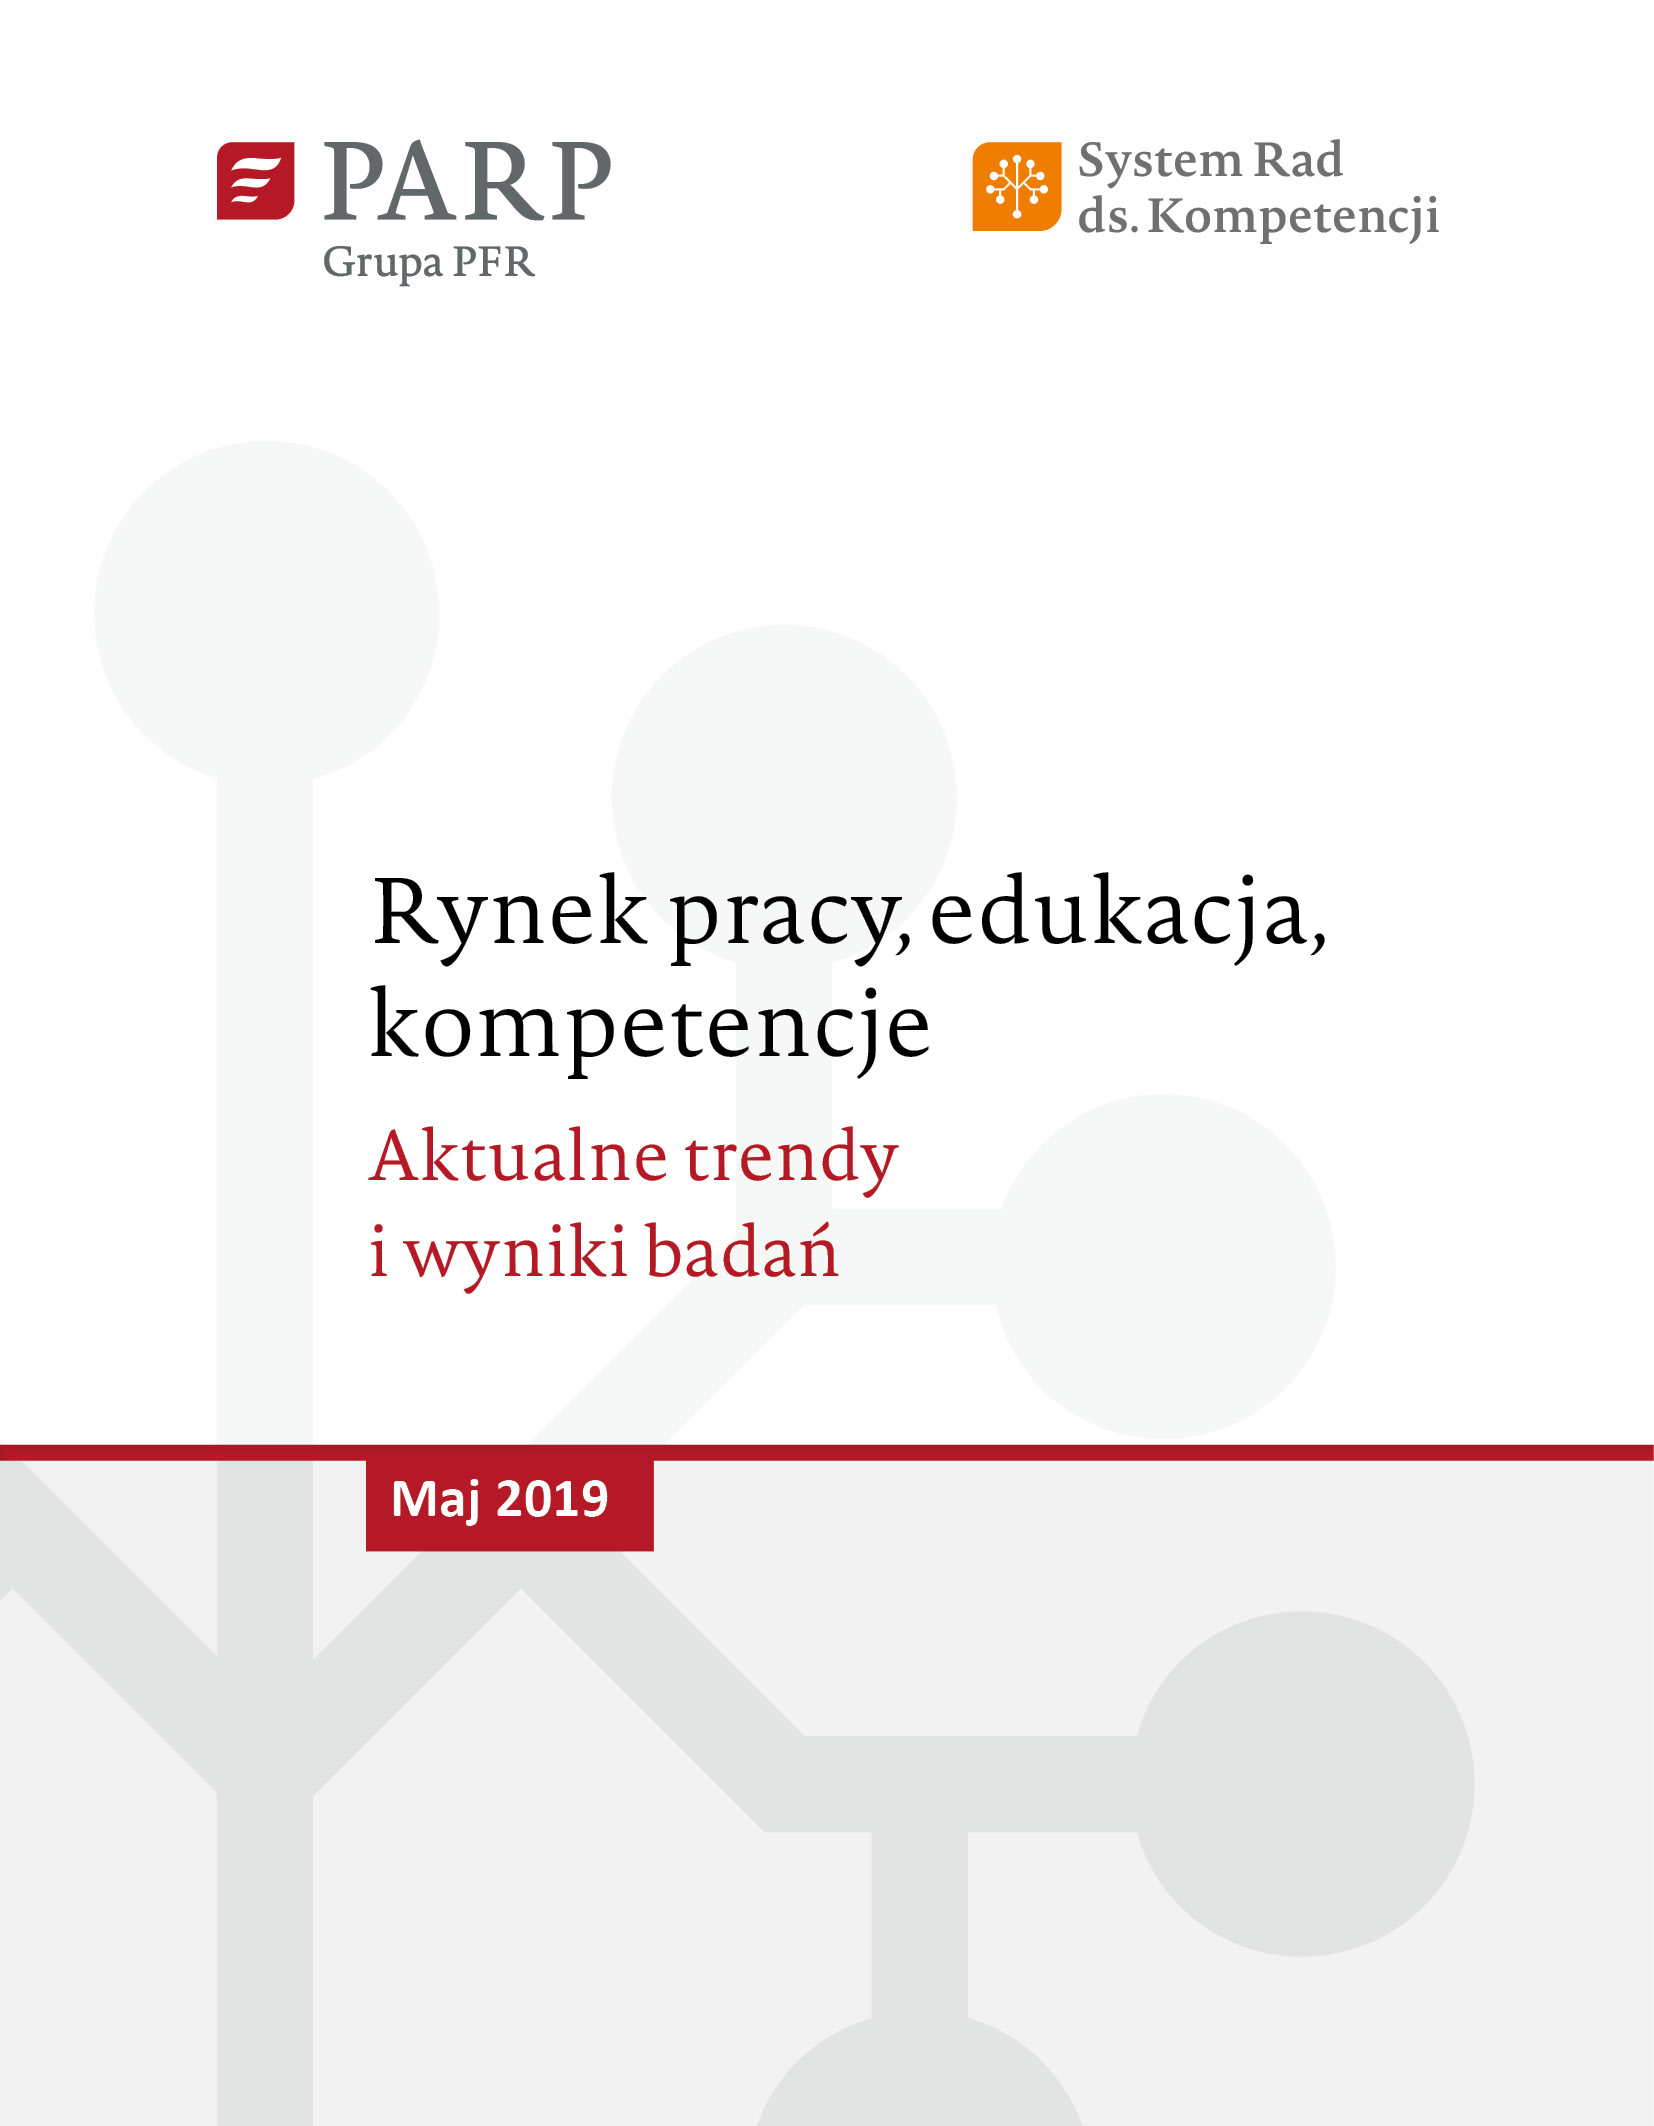 Rynek pracy, edukacja, kompetencje - maj 2019